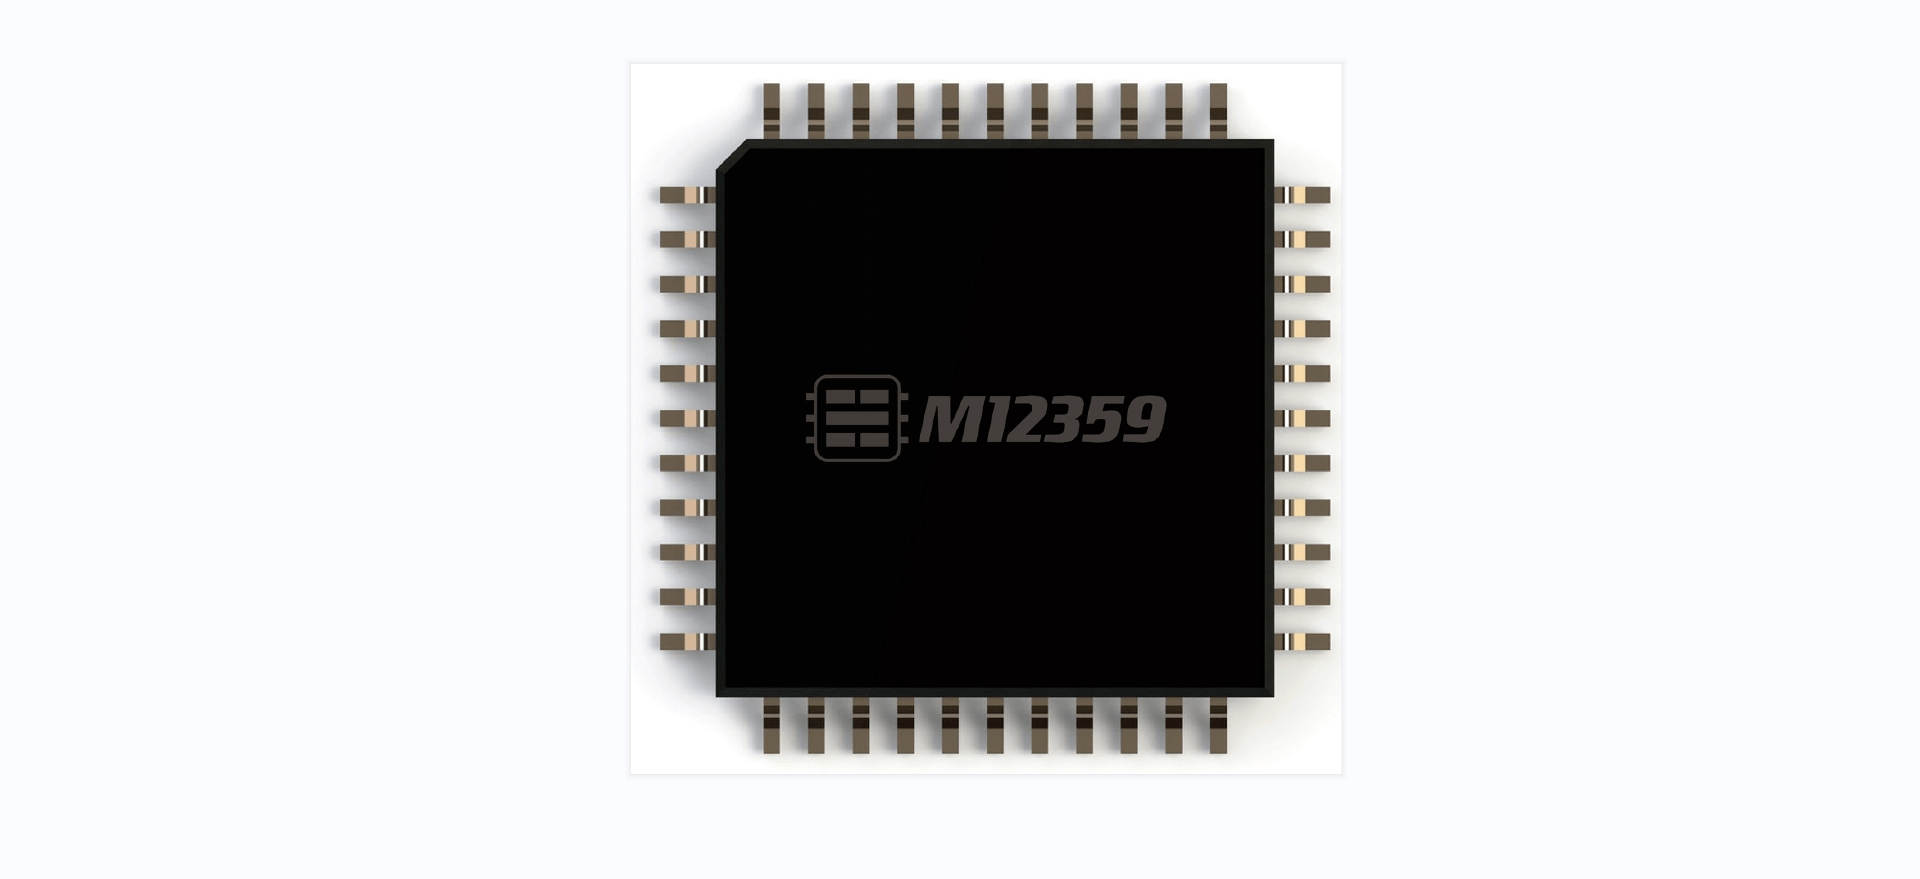 水芯M12359系列芯片的“芯”功能可以解决“多口充电干扰难题”